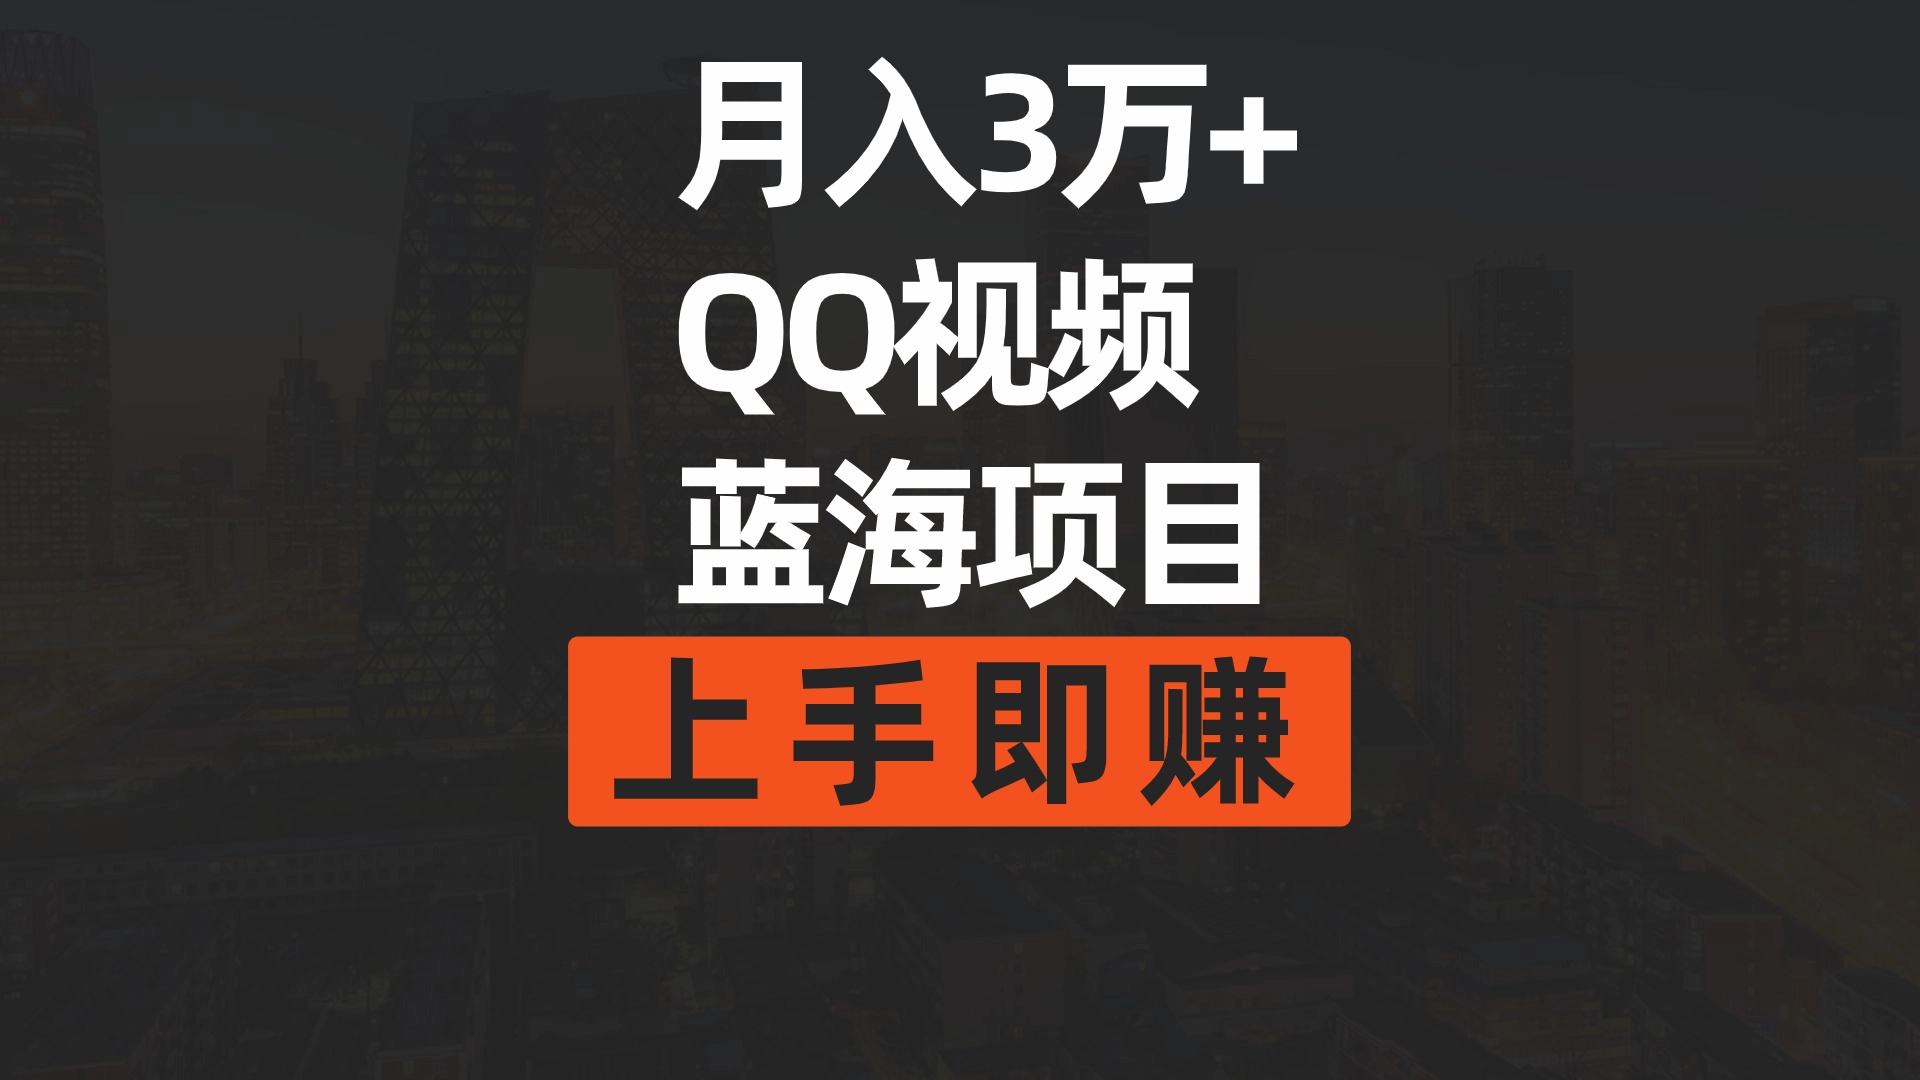 （9503期）月入3万+ 简单搬运去重QQ视频蓝海赛道  上手即赚_94轻创网